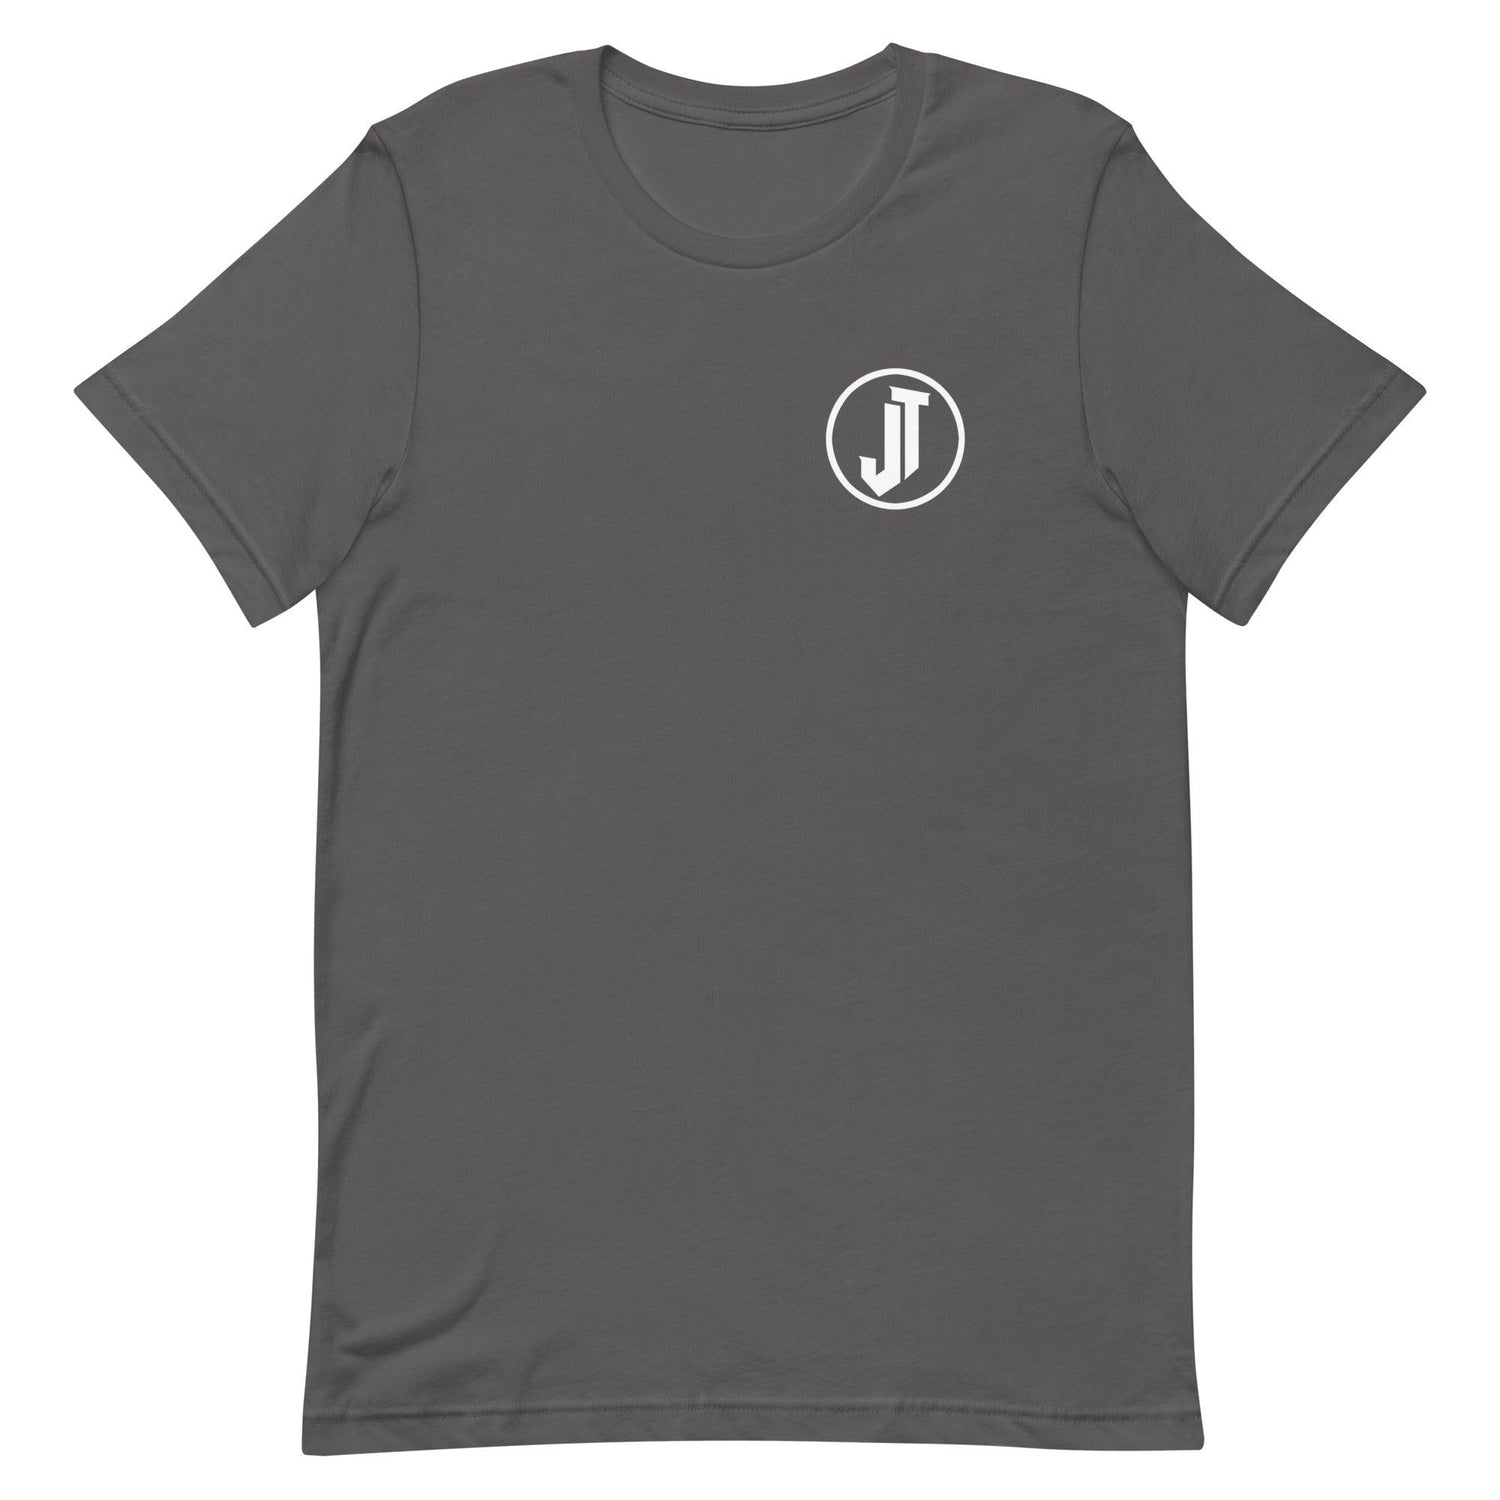 Jaylon Tate "Elite" t-shirt - Fan Arch